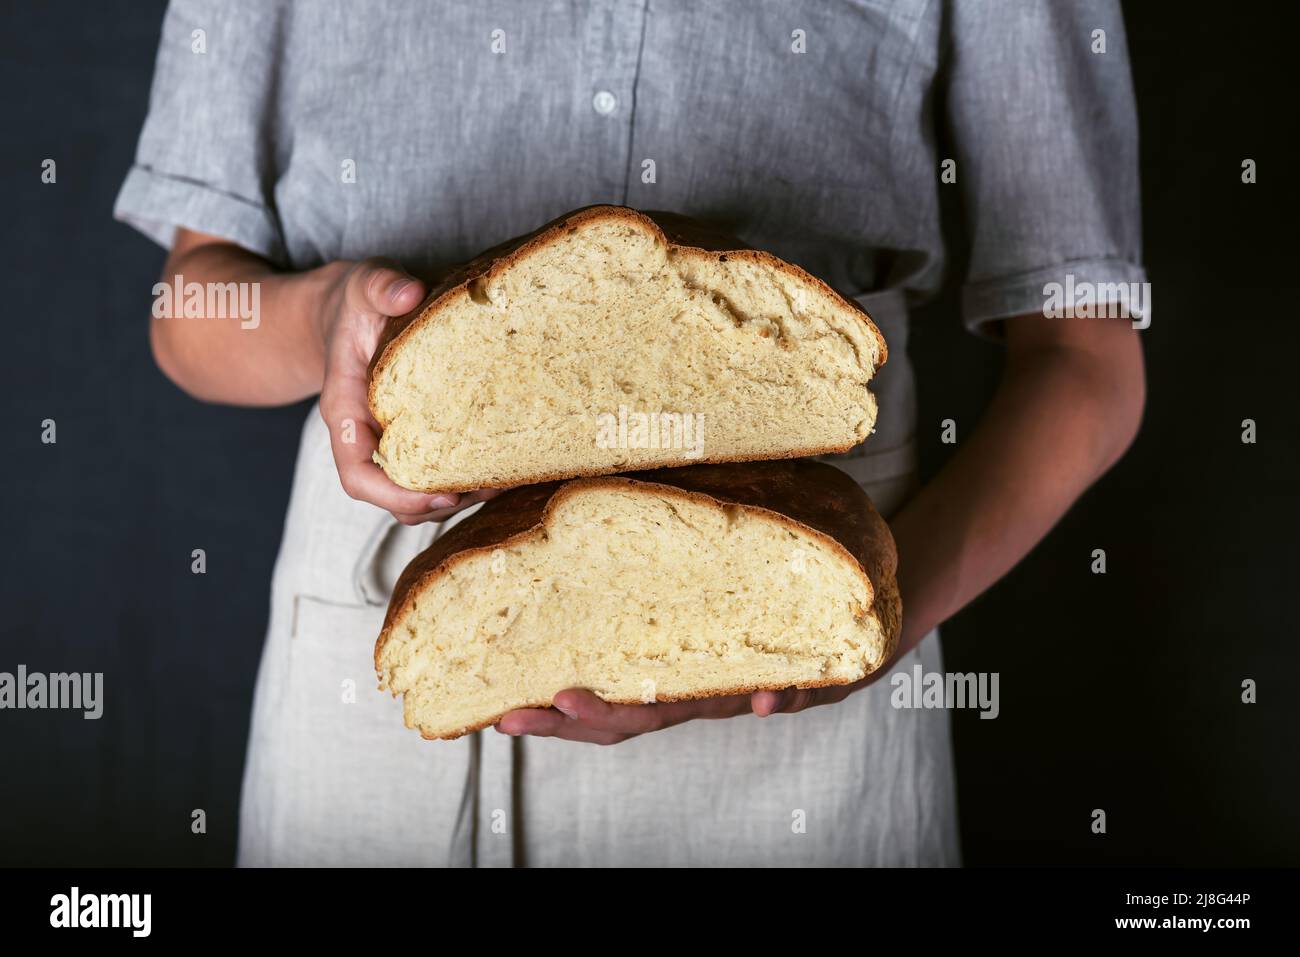 Manos femeninas sosteniendo pan artesano de masa de harina recién horneado rebanado en medias. Casero con harina de trigo y entrante. Estilo rústico oscuro. Foto de stock